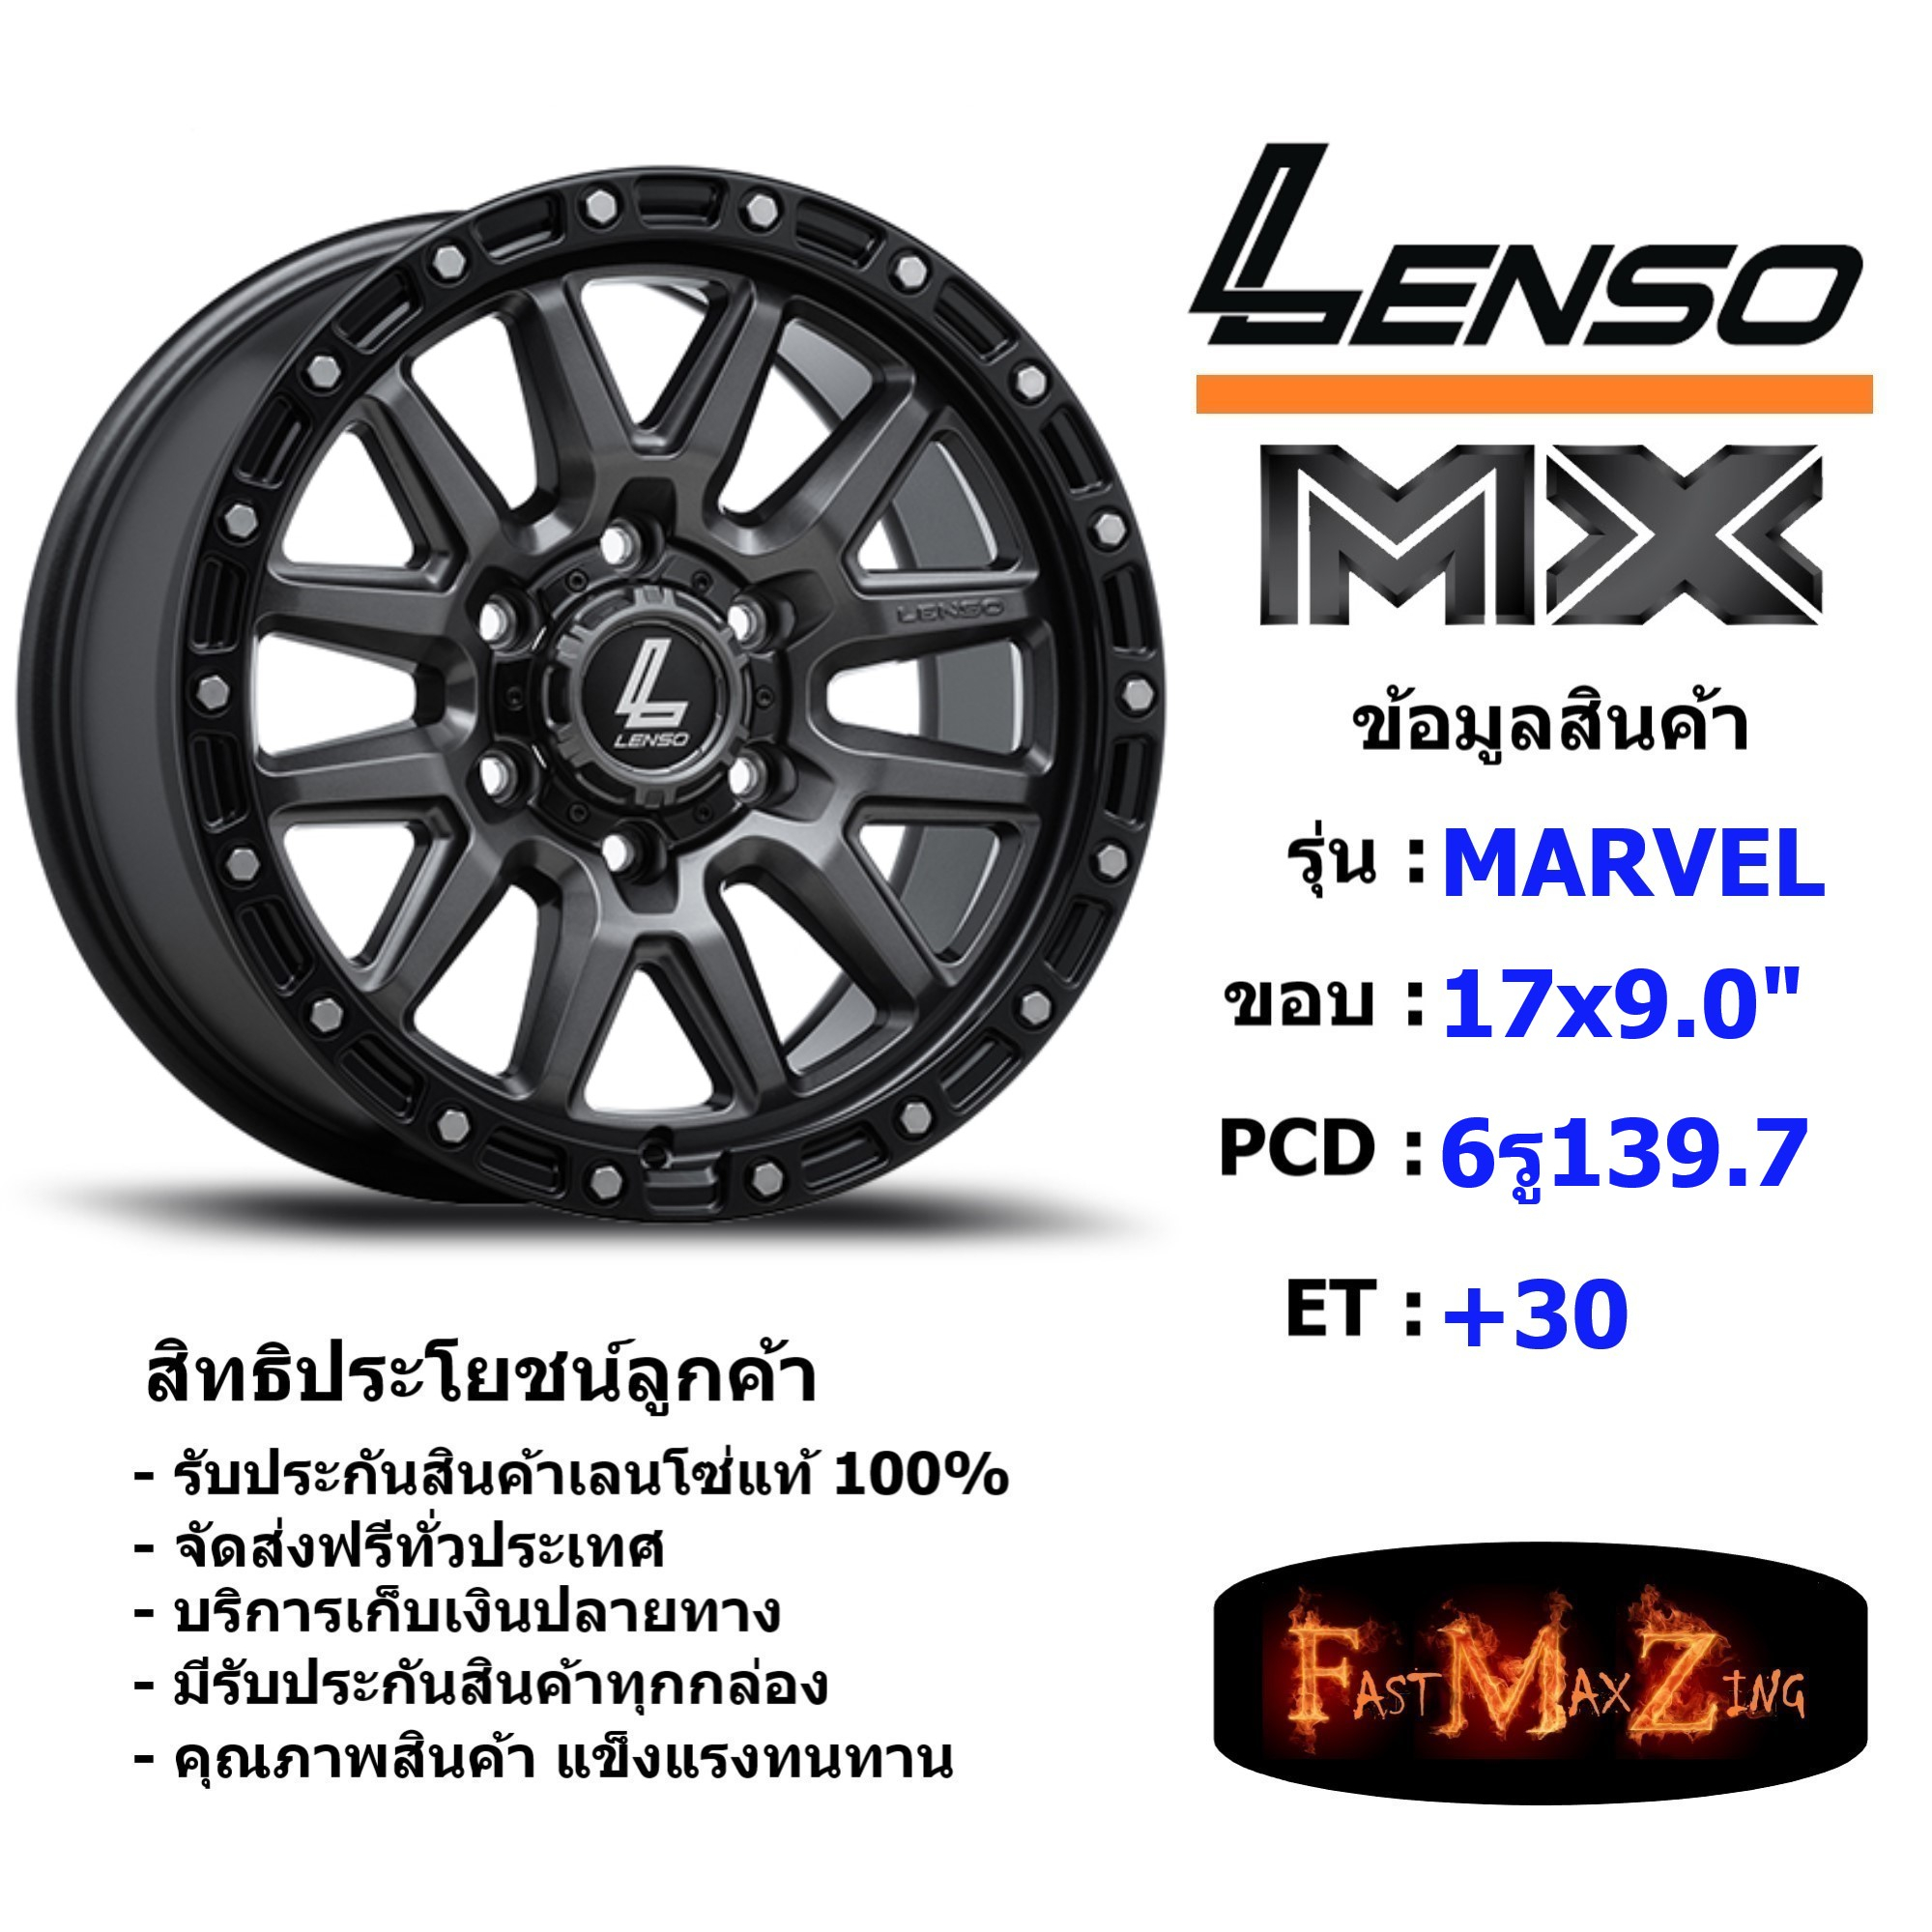 Lenso Wheel MX MARVEL ขอบ 17x9.0" 6รู139.7 ET+30 สีGLMK แม็กเลนโซ่ ล้อแม็ก เลนโซ่ lenso17 แม็กรถยนต์ขอบ17 แม็กขอบ17 แม็ก